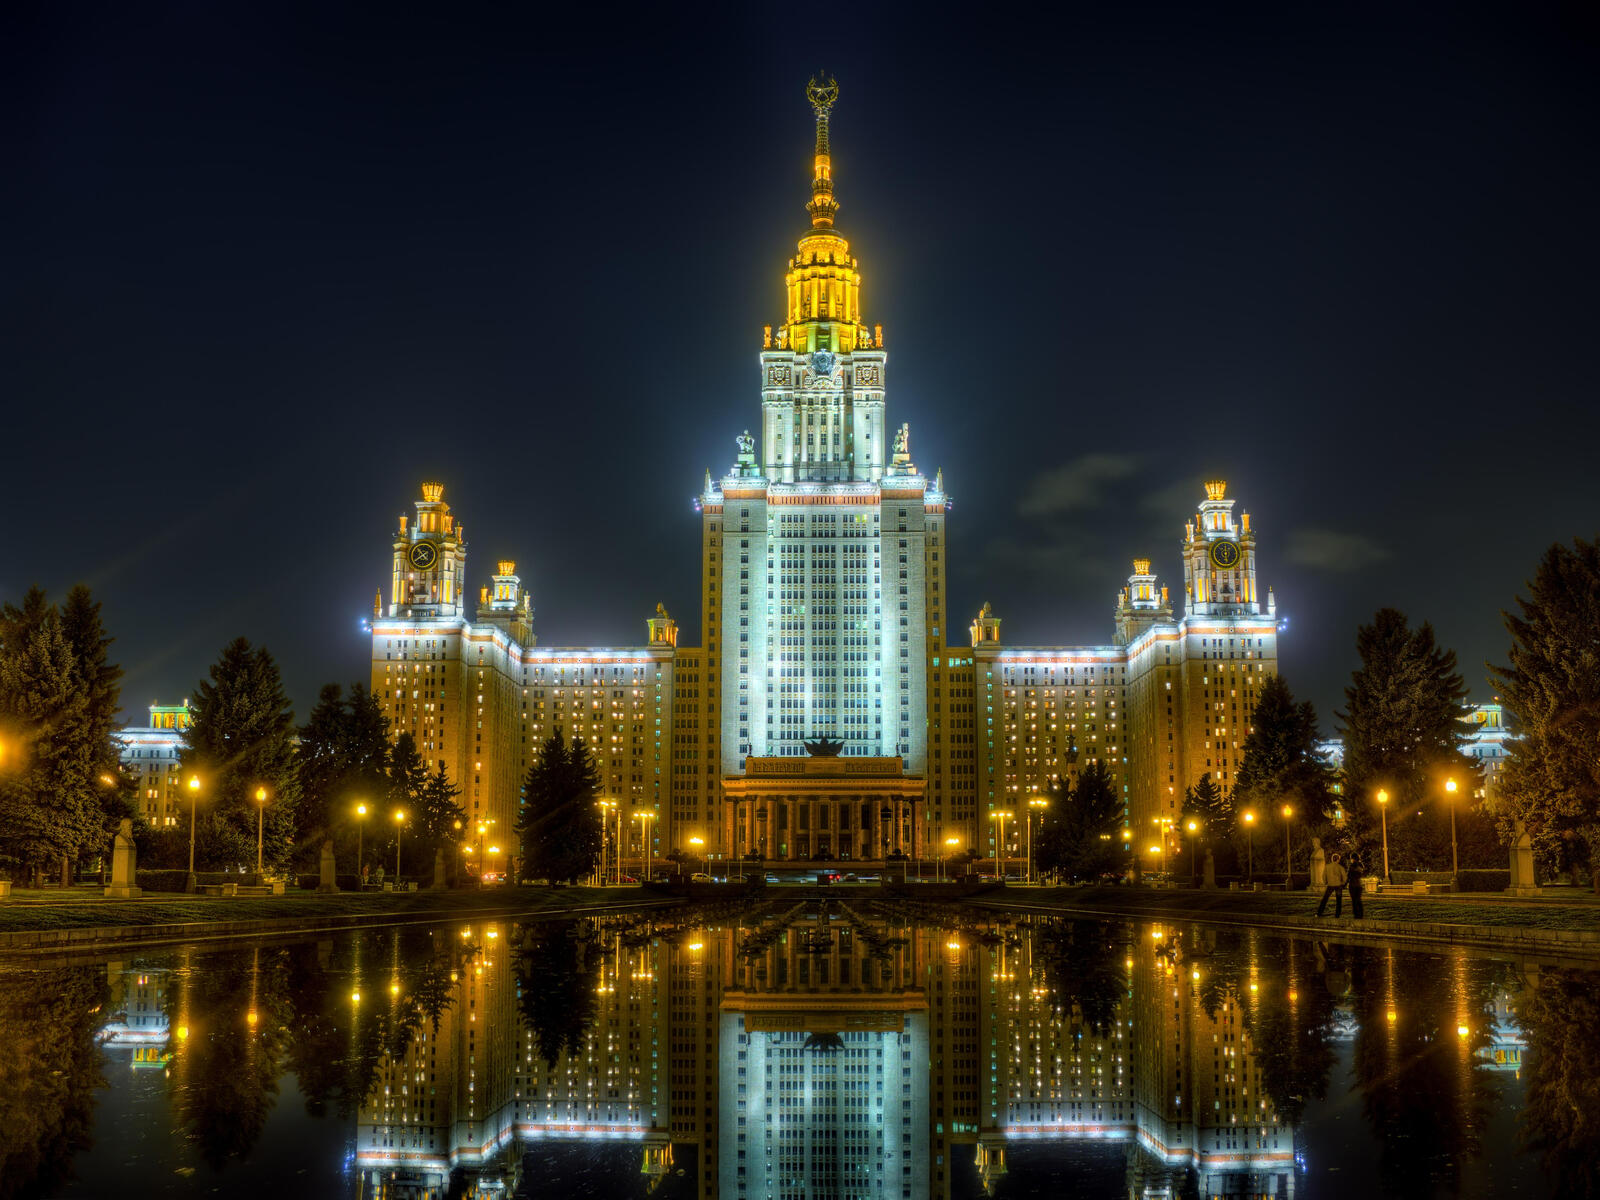 免费照片壁纸 俄罗斯，莫斯科 在您的手机上高品质